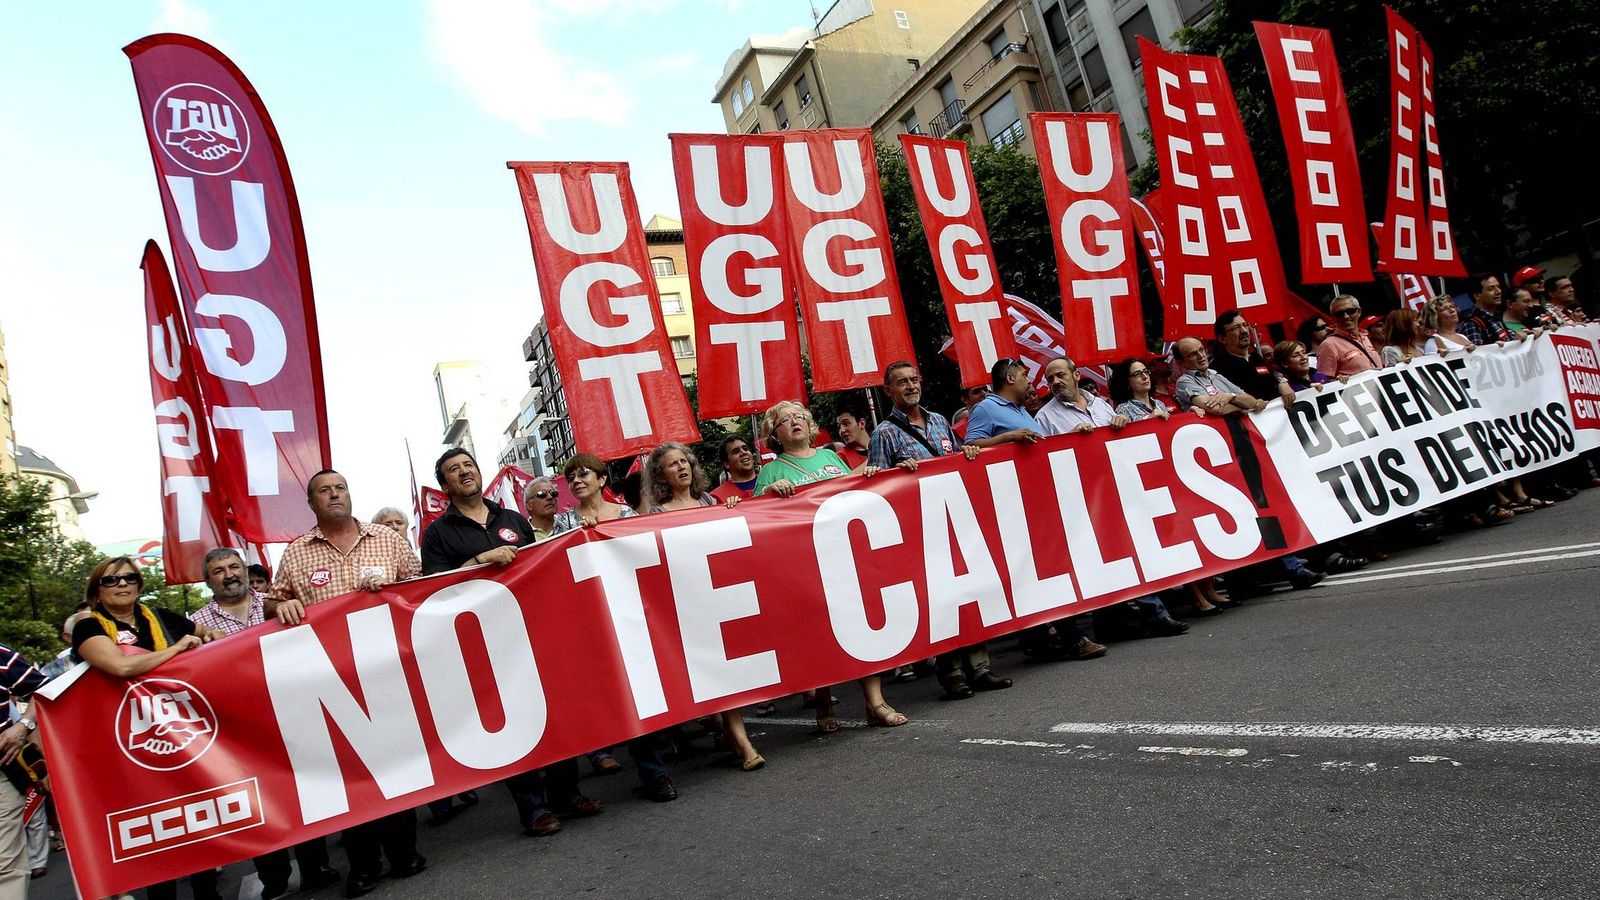 Foto: Manifestación convocada contra los recortes sociales y la reforma laboral en Zaragoza en el 2012. EFE